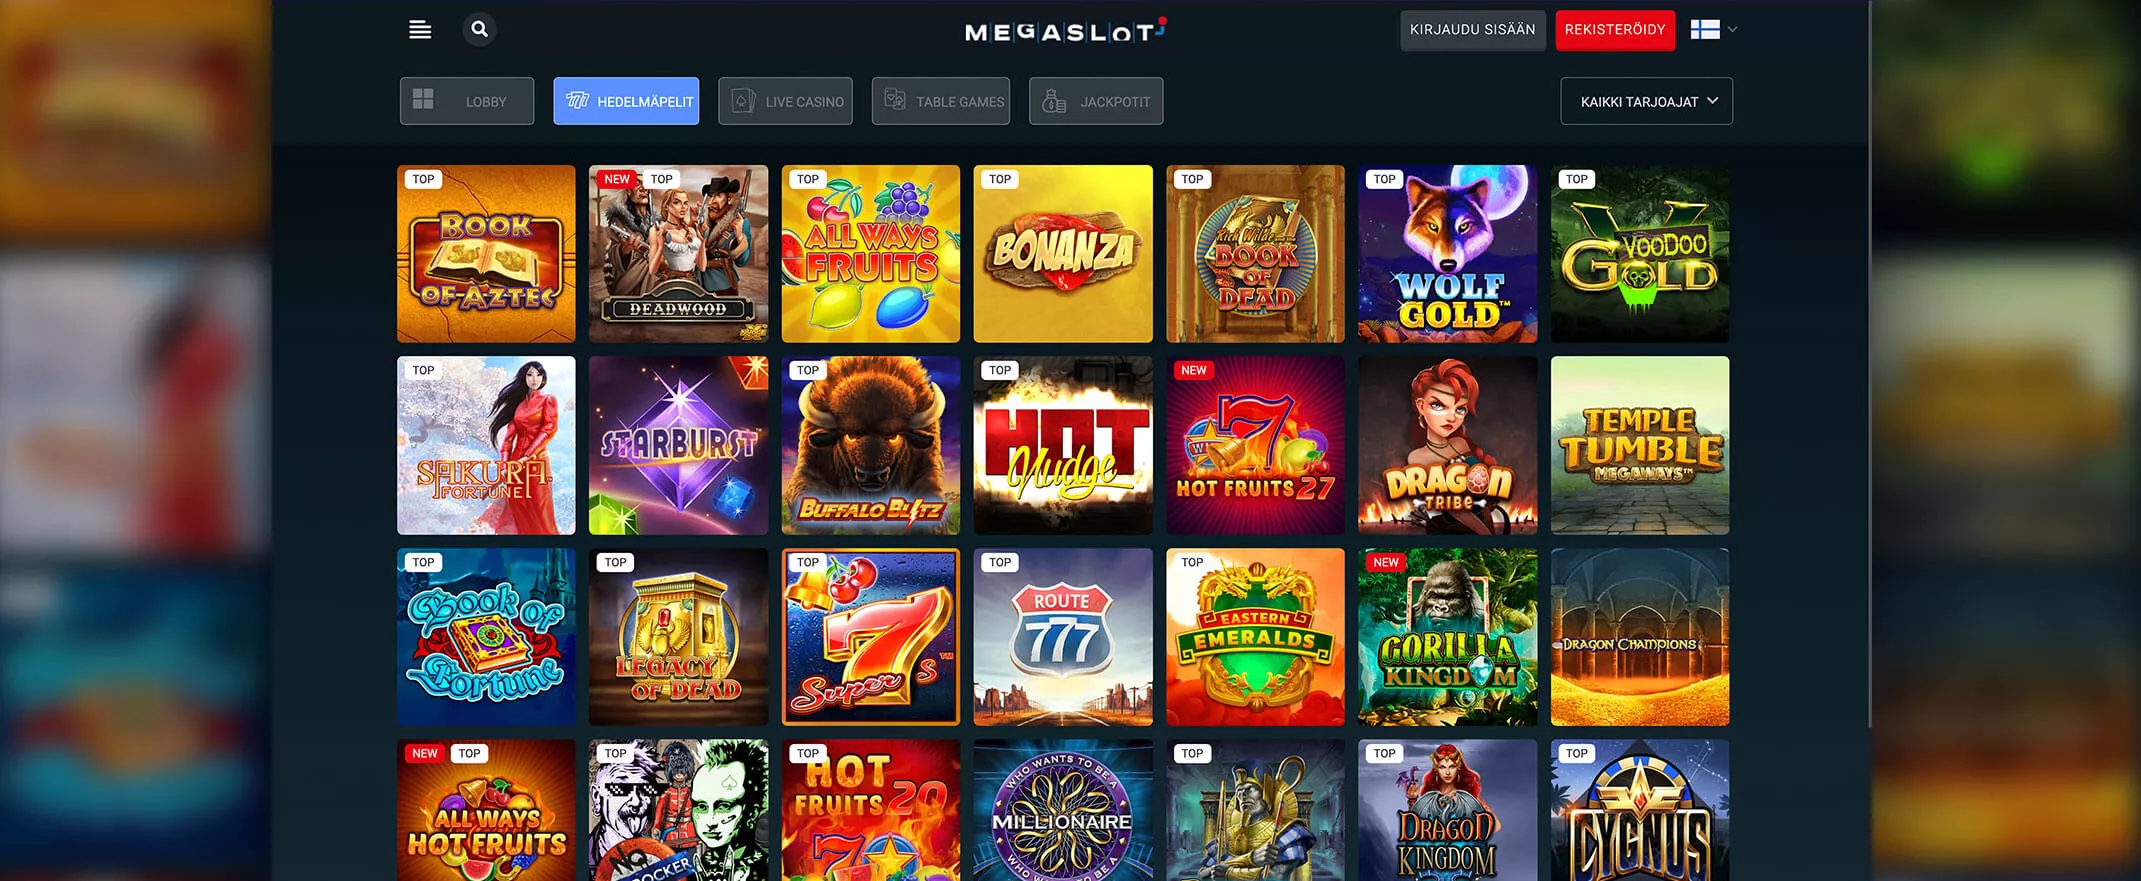 Megaslot-kasinon peliautomaatit